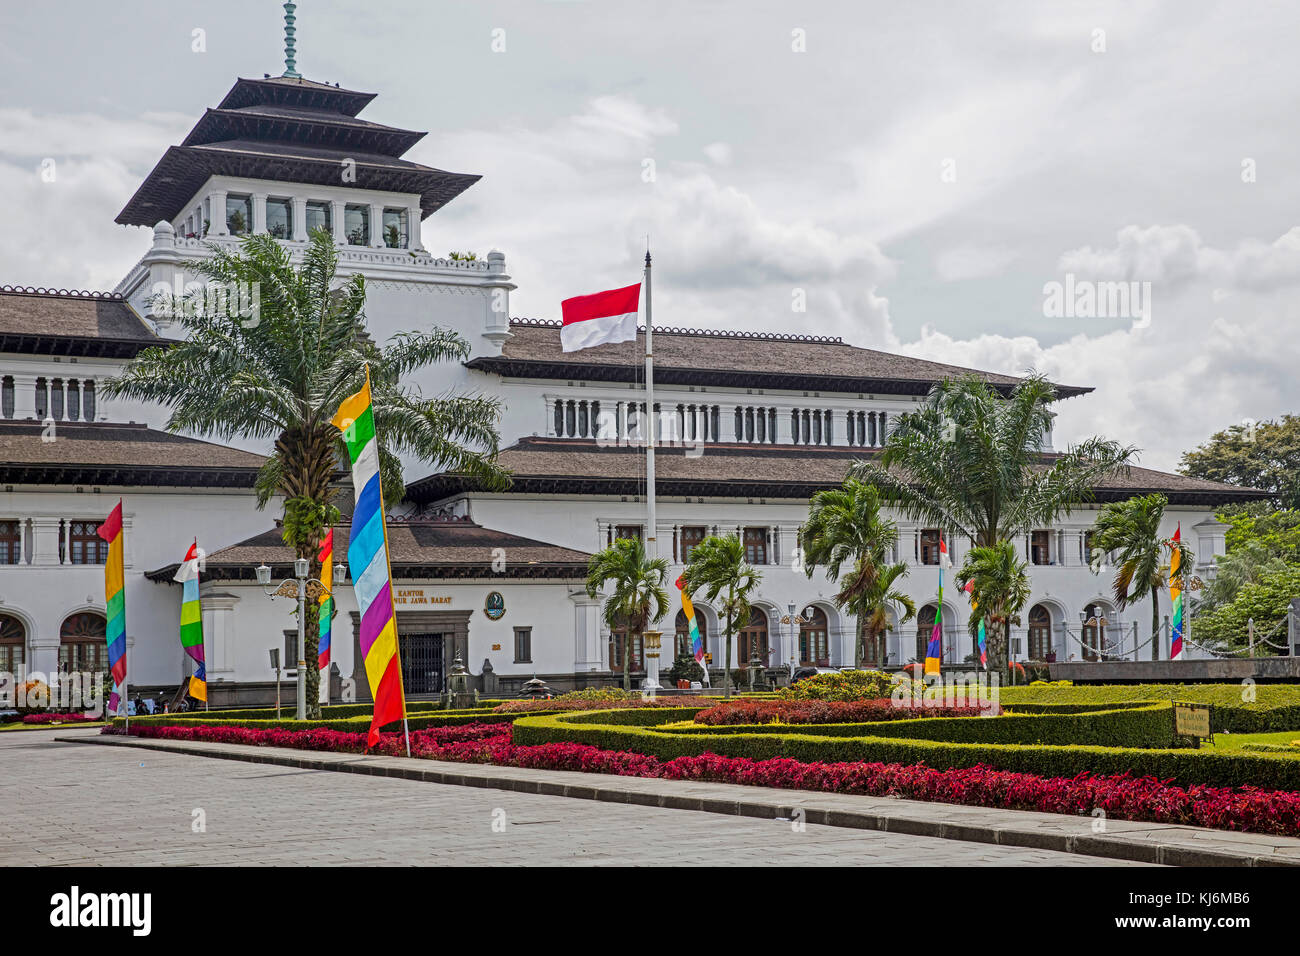 Gedung sate, olandese edificio coloniale in indo-stile europeo, ex sede delle Indie orientali olandesi nella città di Bandung, west java, INDONESIA Foto Stock